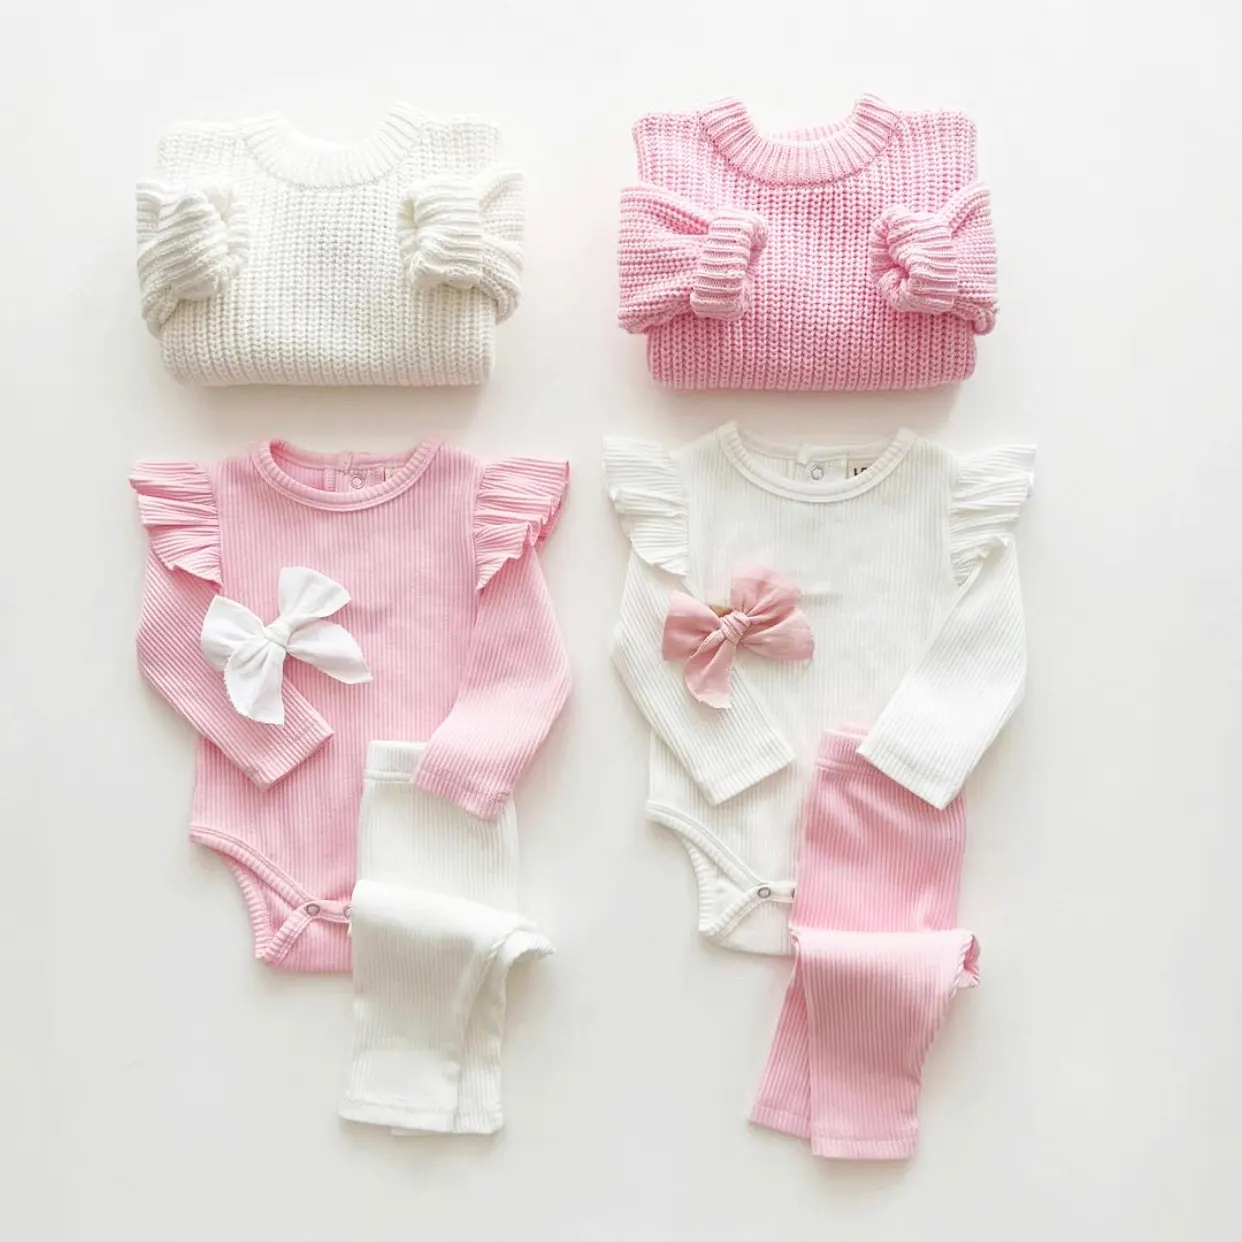 कस्टम OEM नवजात शिशु बच्चा लड़कियों के लिए रोम्पर कपड़े सॉलिड कलर फ्लाइंग स्लीव बेबी रोम्पर पैंट और हेडबैंड सेट के साथ